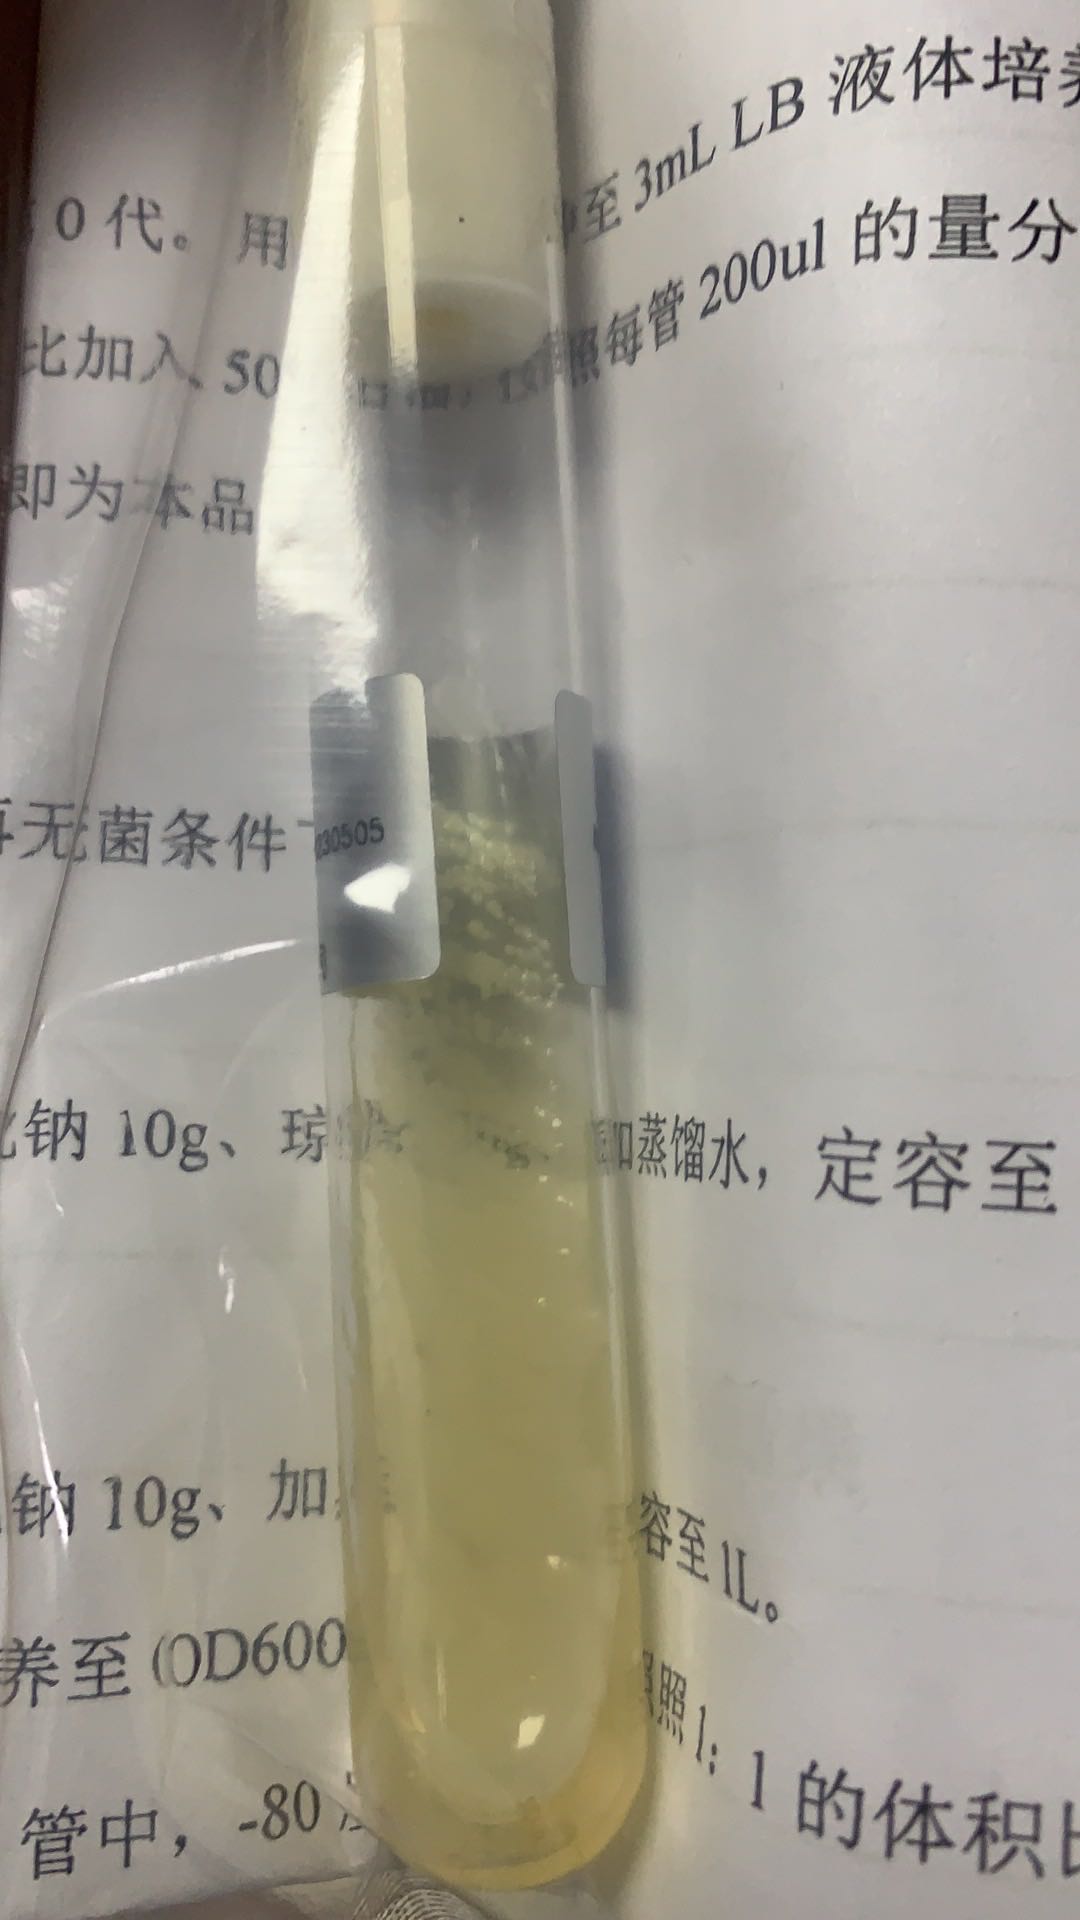 提供金黄色葡萄球菌CMCC_菌液金黄色葡萄球菌保藏中心_上海晅科生物科技有限公司